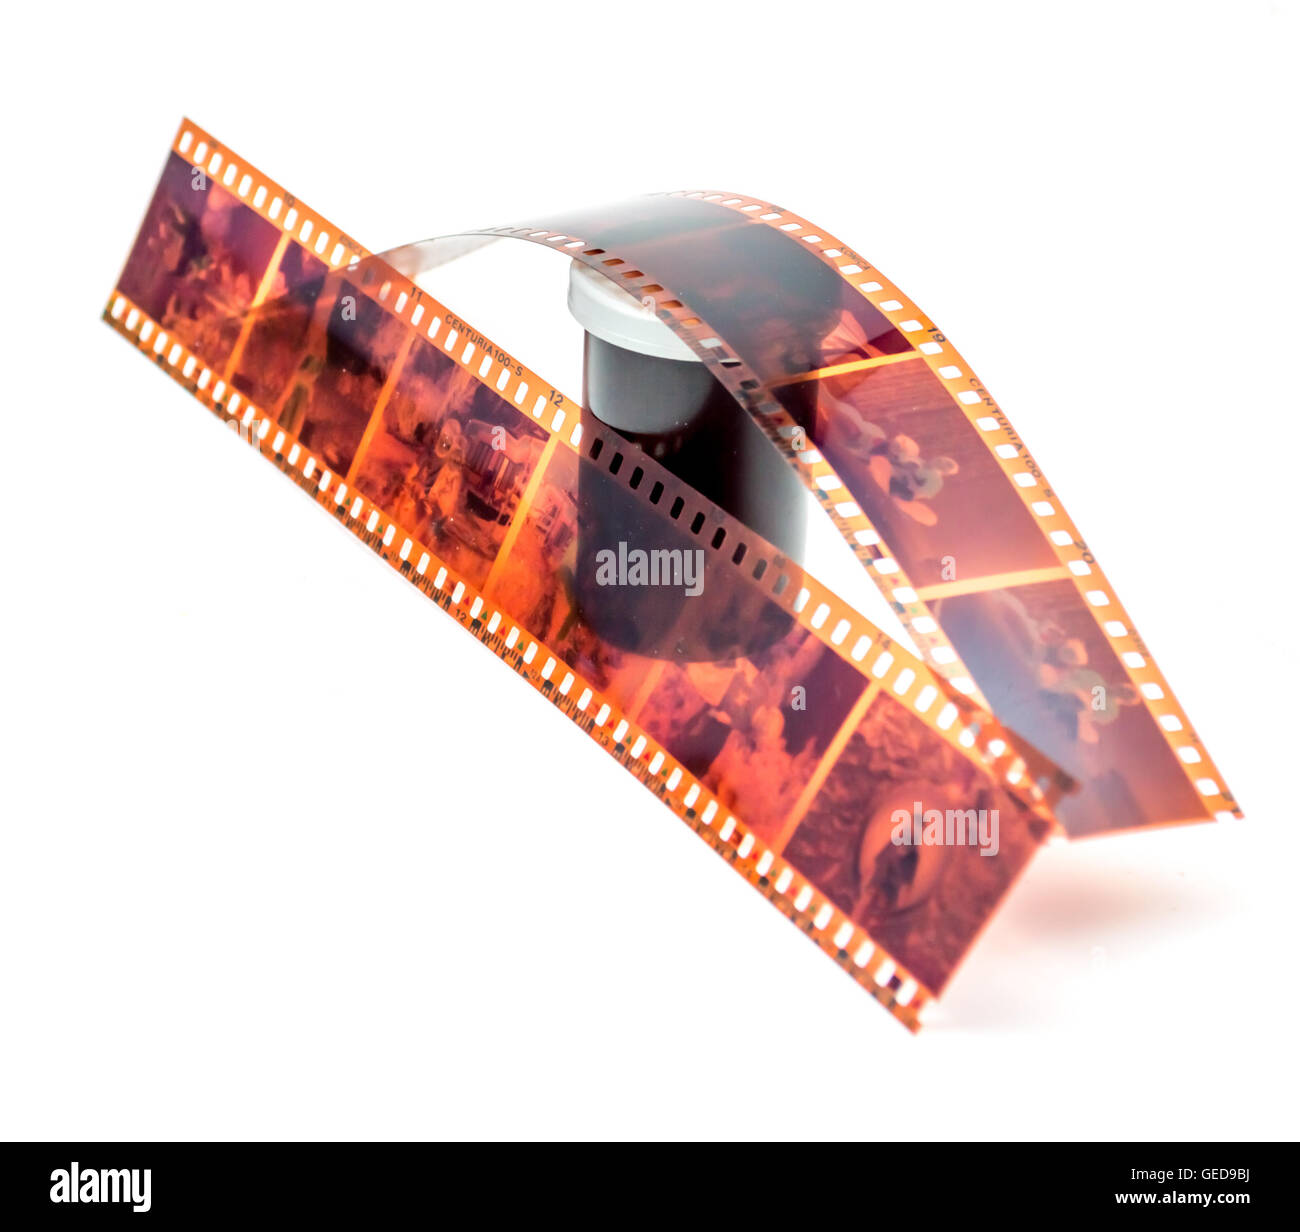 35mm film négatif et roll conteneur sur fond blanc Banque D'Images